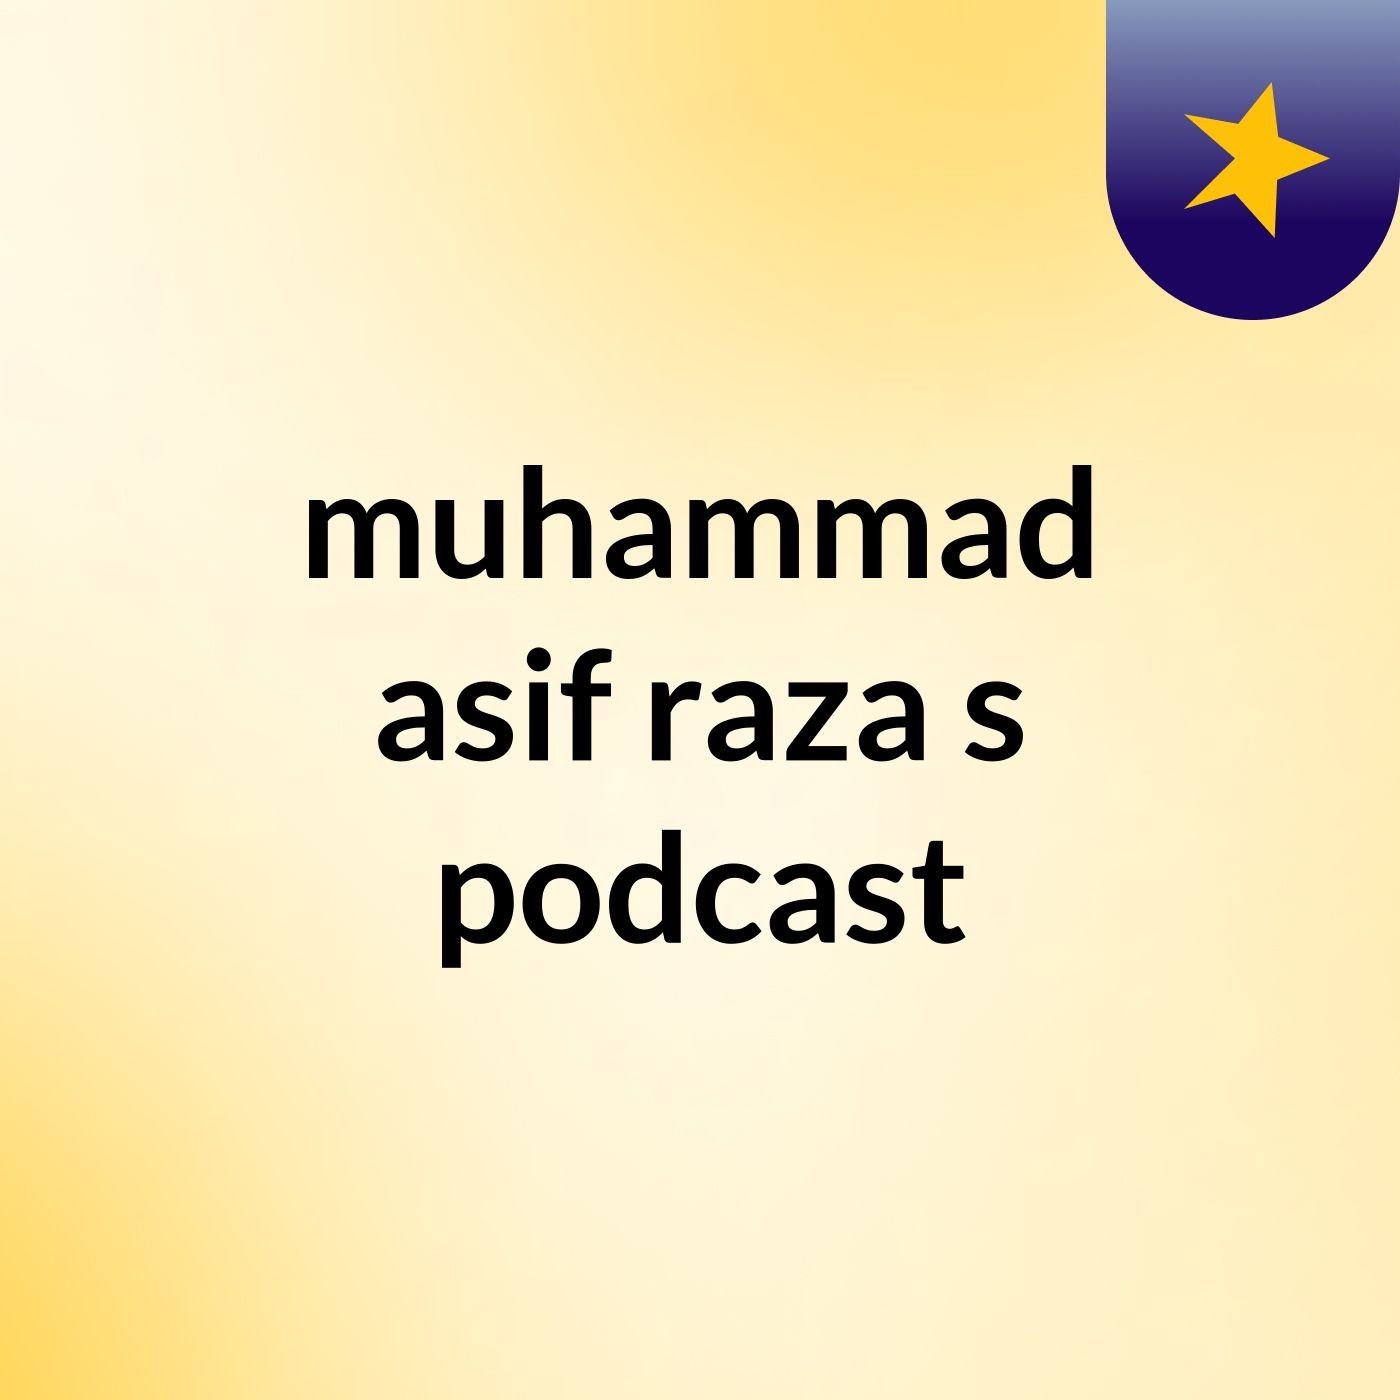 muhammad asif raza's podcast